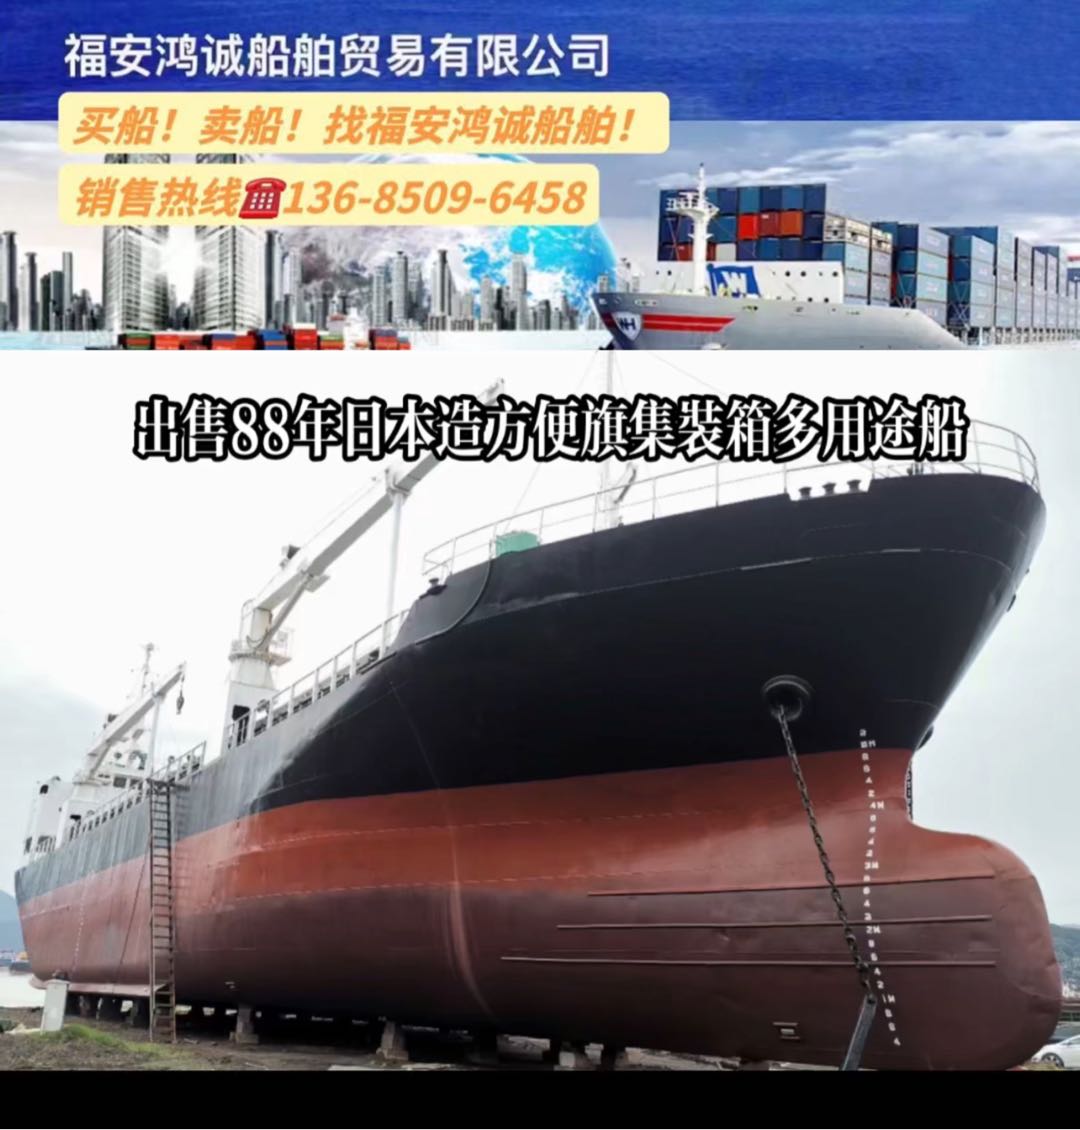 出售88年日本造方便旗集装箱船